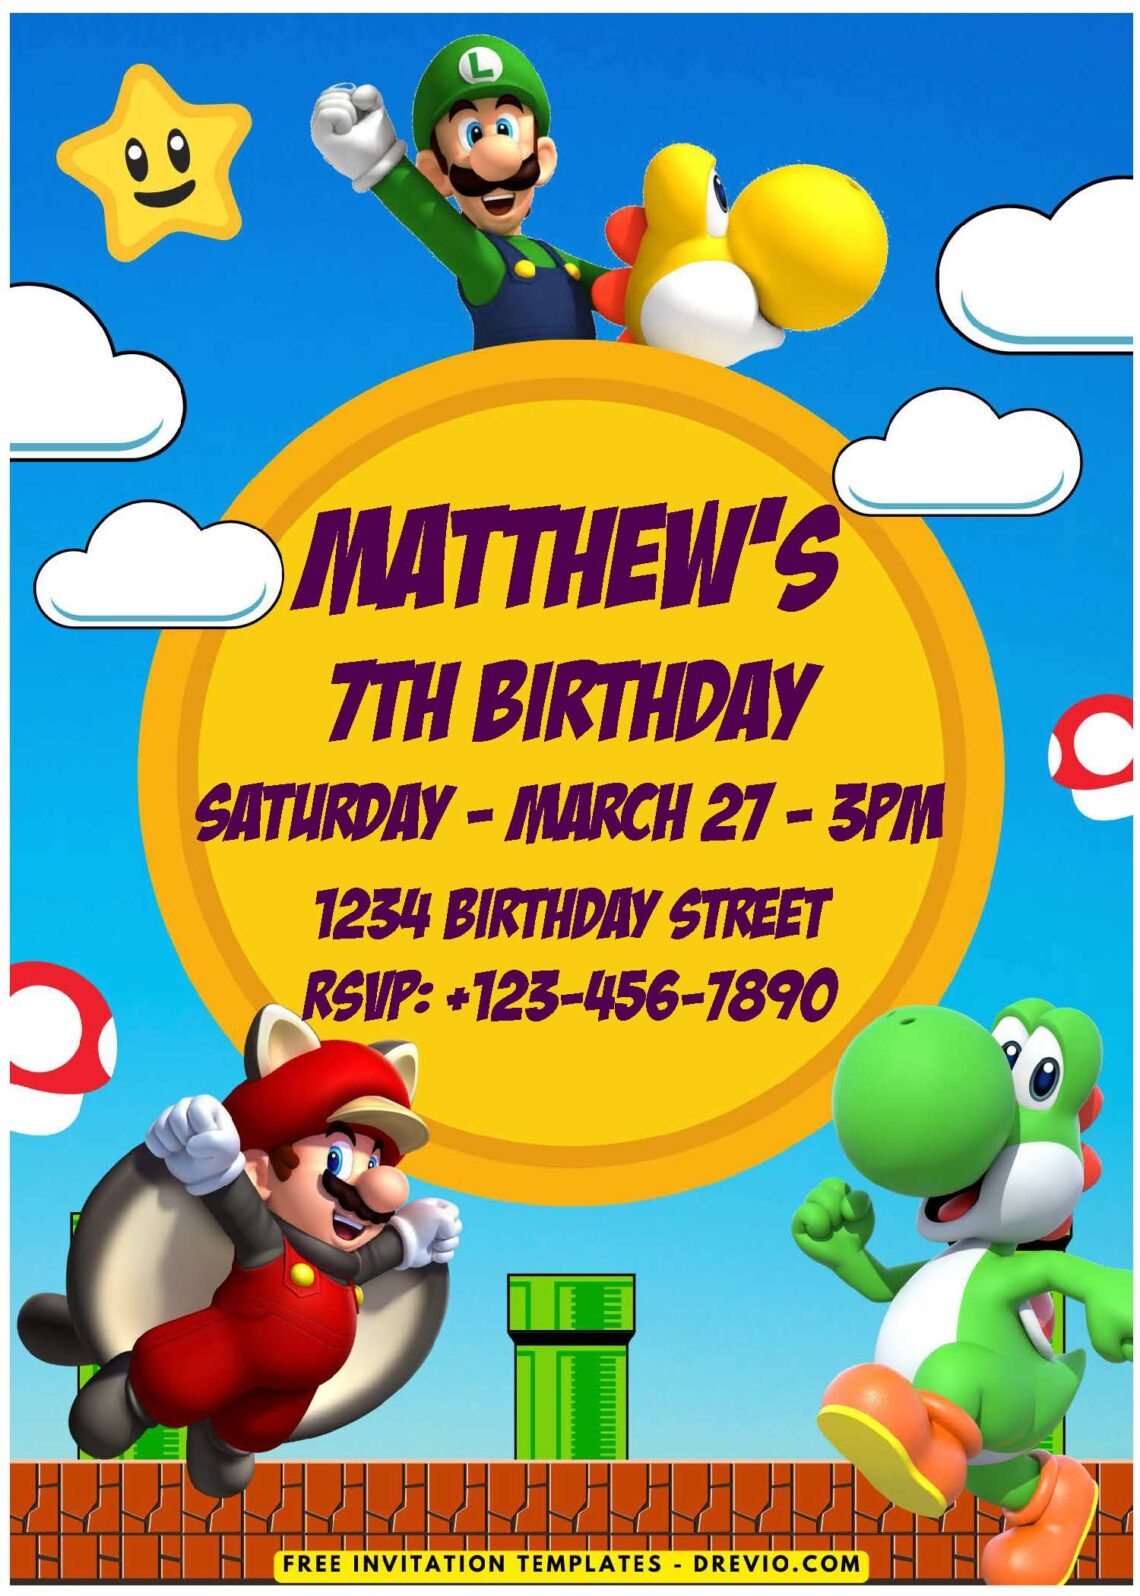 Super Mario Invitation Template Guide: Free Designs For Your Party! E